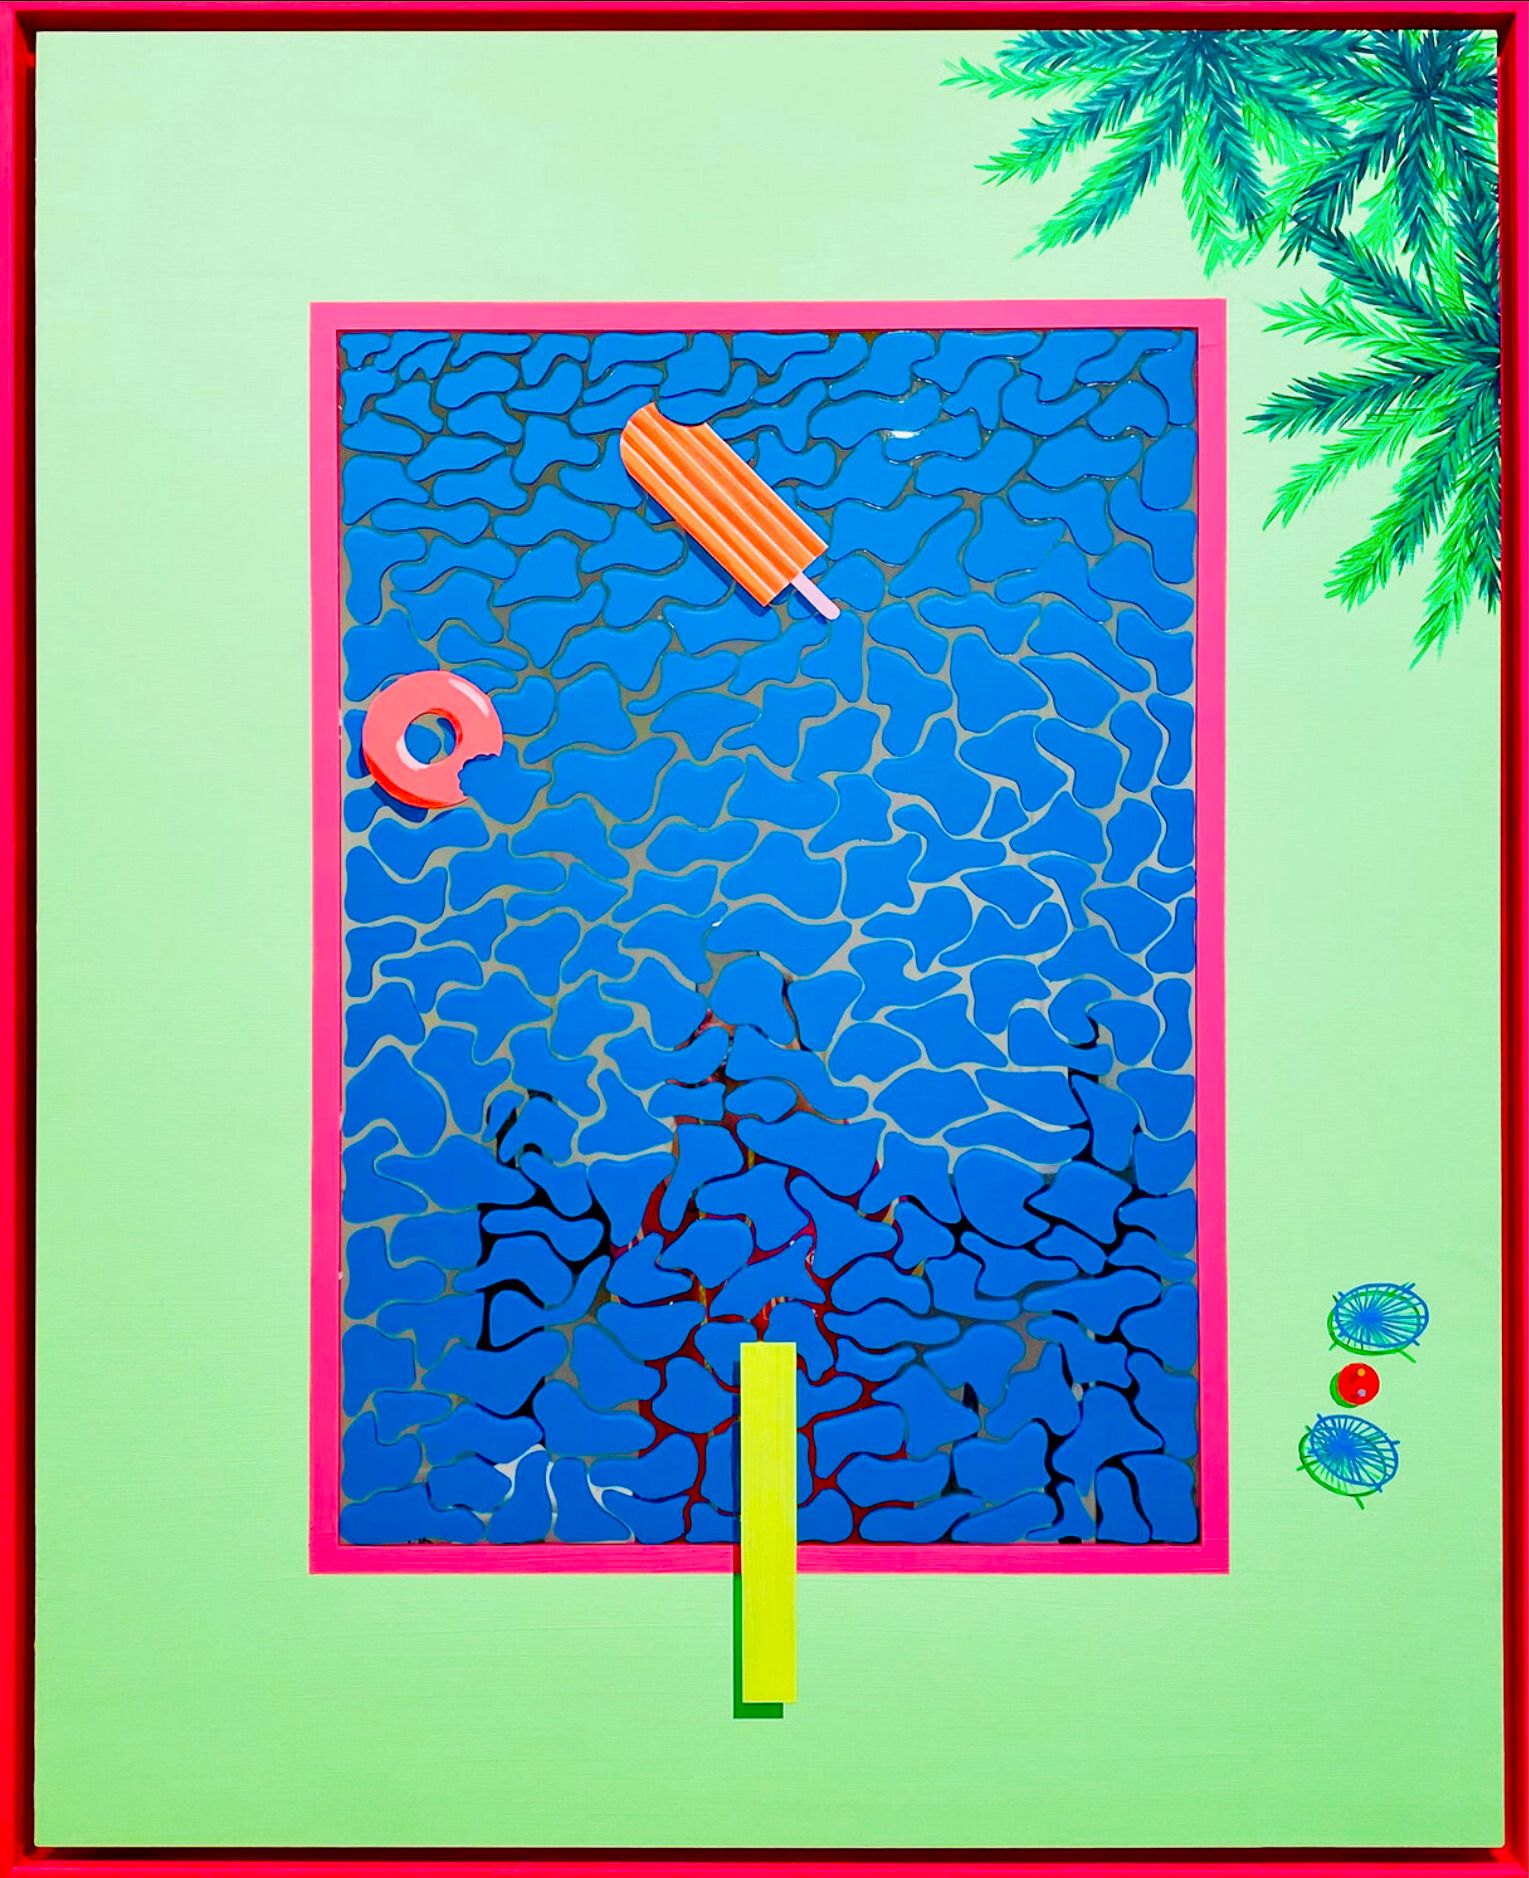 Isabelle Derecque, "Domingo en la piscina" Pintura colorista, en una misteriosa piscina de colores lugares pintados sobre espejo plexi en estilo pop-up con colores alegres y enérgicos. Visualizado mediante geometría, perspectivas, contrastes y reflejos.